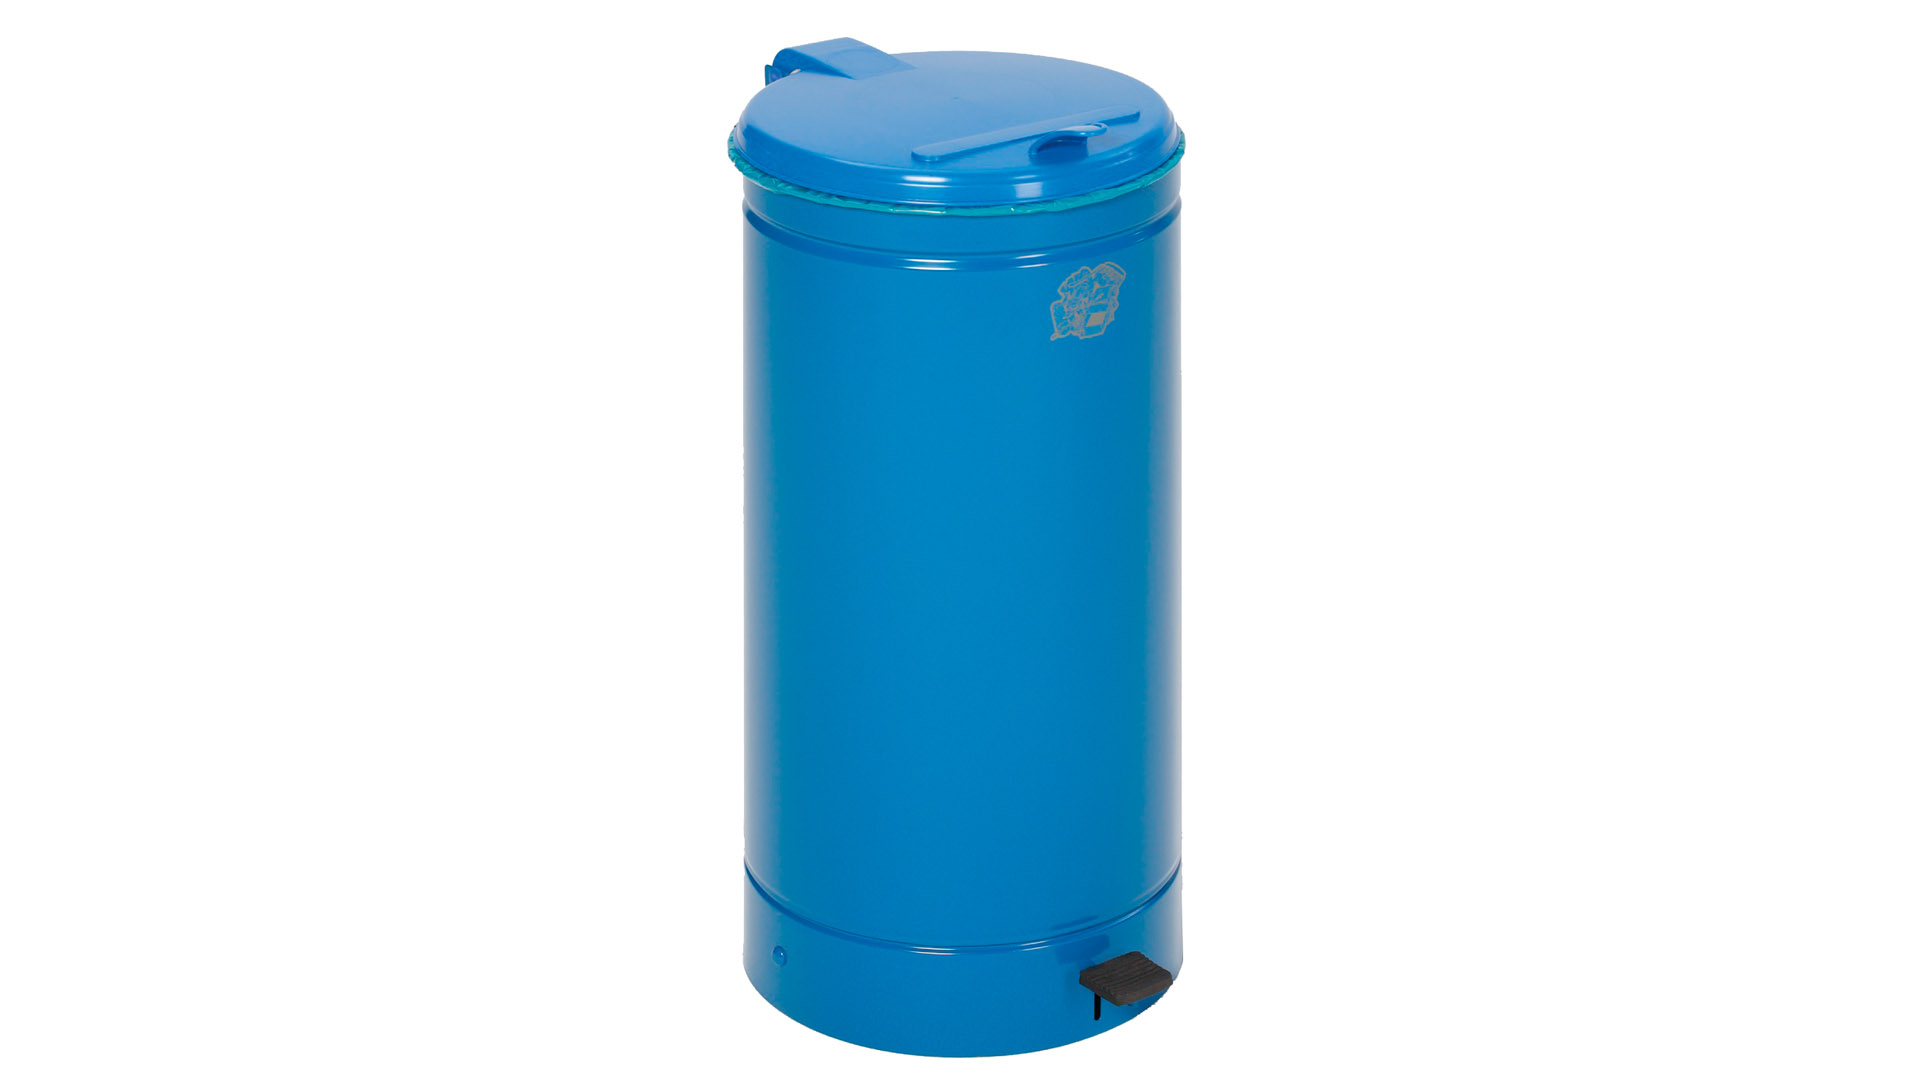 Tretabfallsammler, fußbetätigt, Stahlblech, Volumen 60 Liter, Durchm. 450 mm, Höhe 700 mm, Behälter enzianblau, Deckel blau